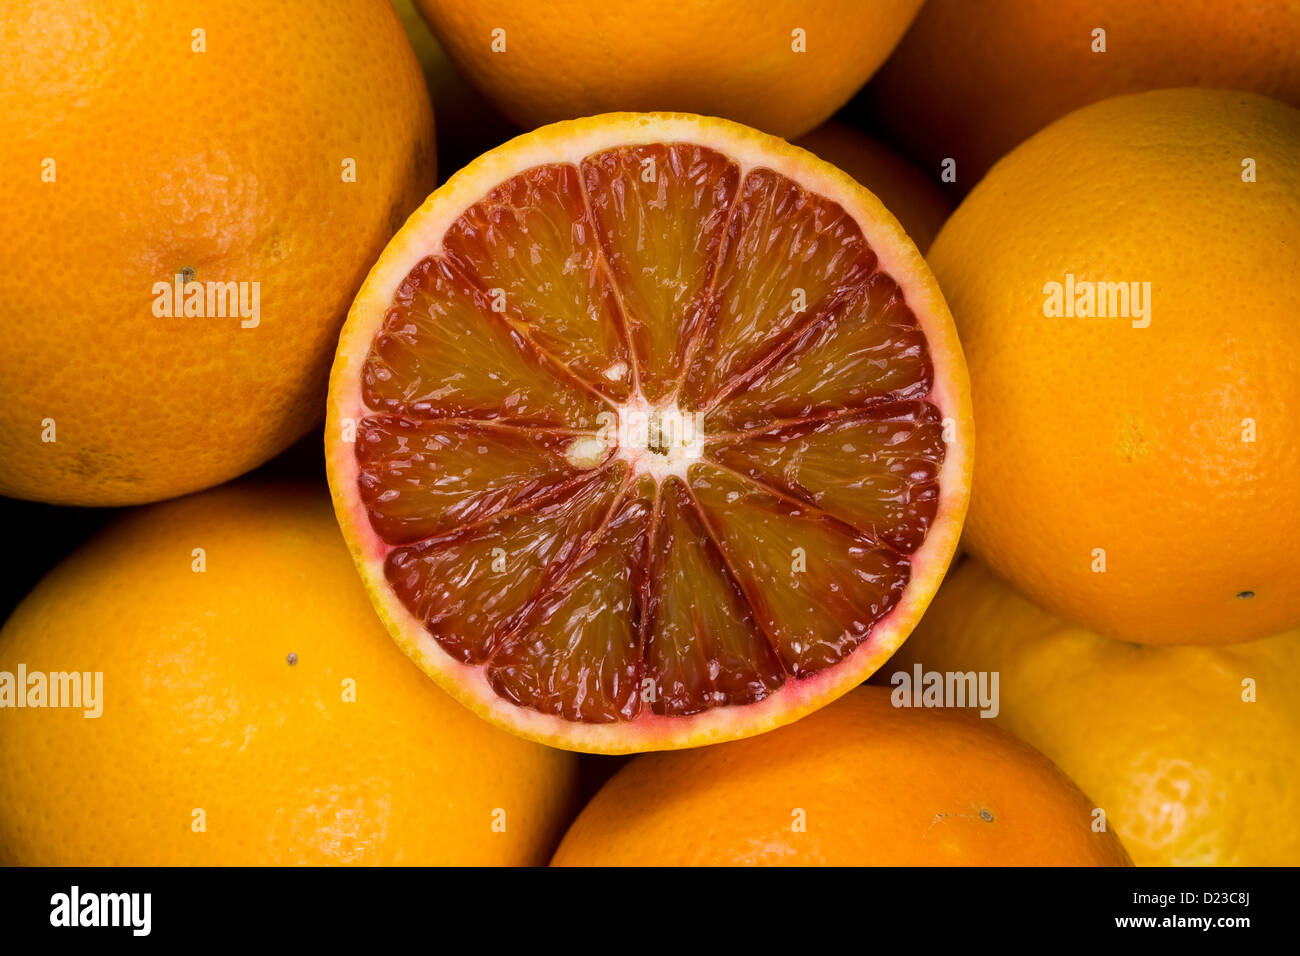 X sinenesis cítricos. Las naranjas de sangre en un cuenco de fruta. Foto de stock